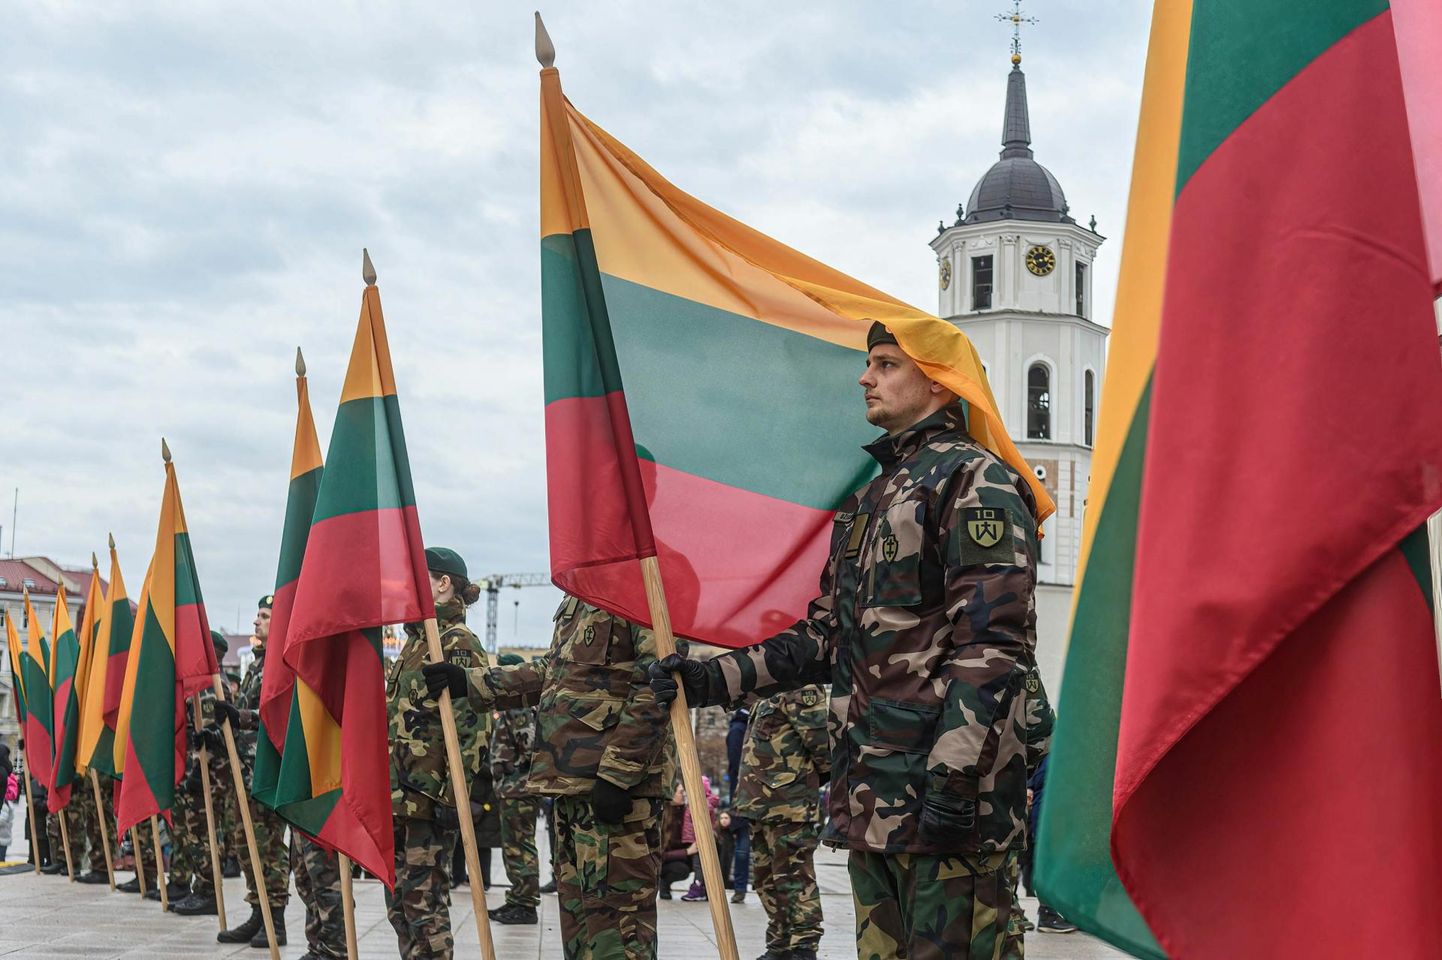 Leedu sõjaväelased 1. jaanuaril riigi lipupäeva tseremoonial. 